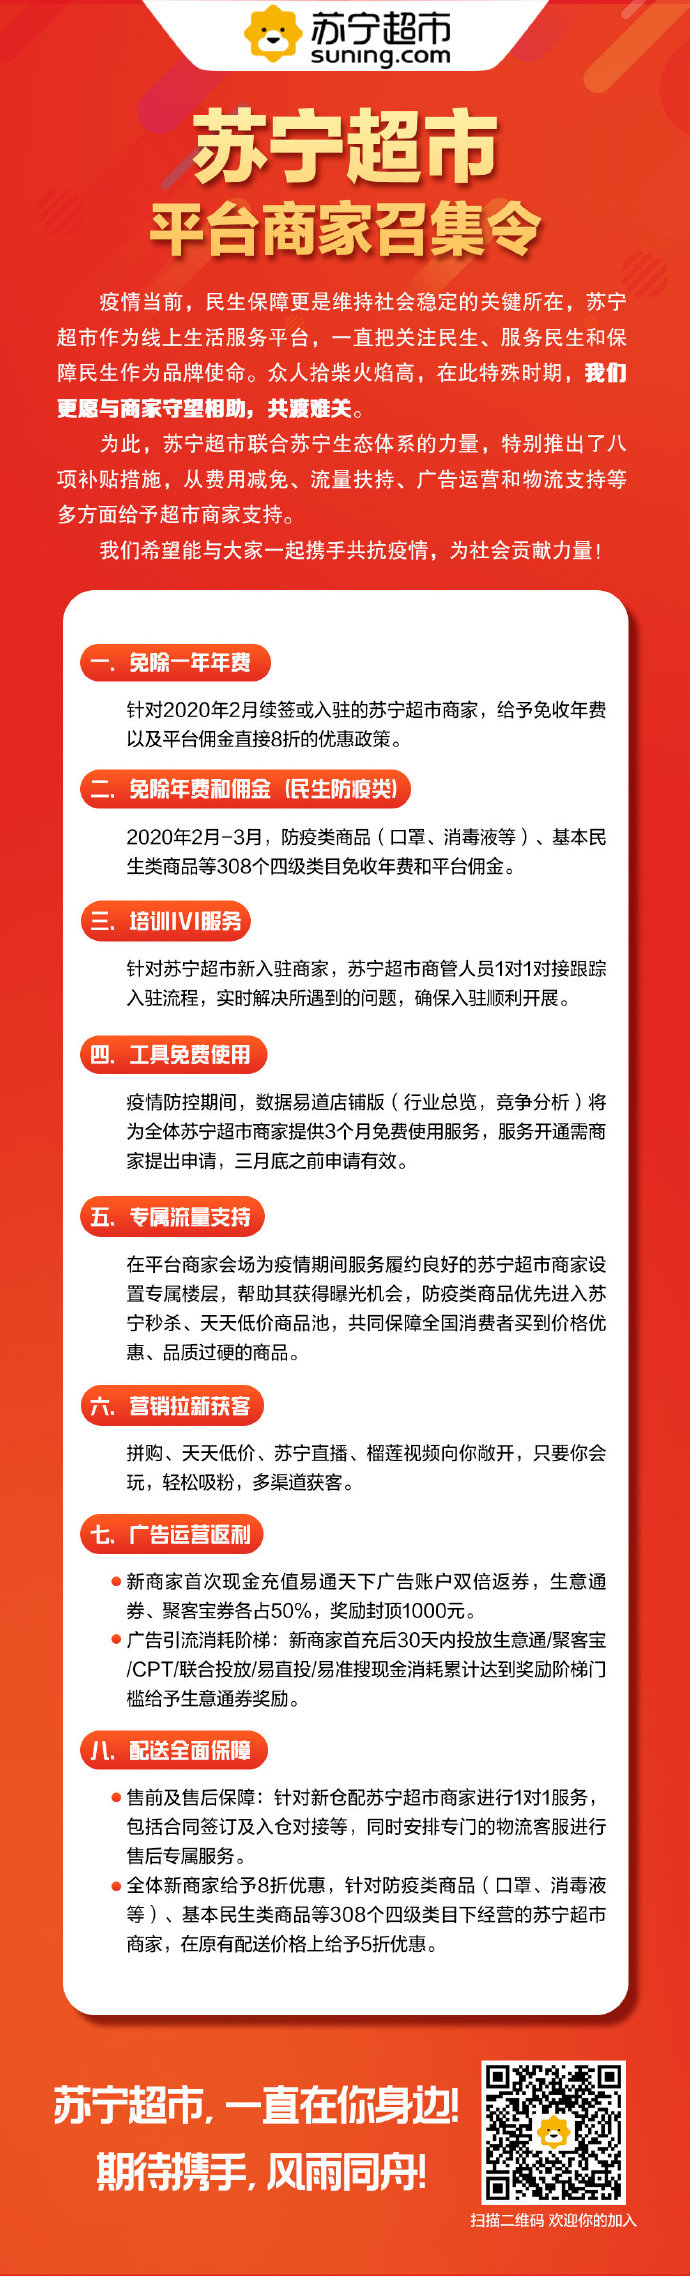 苏宁超市发布平台商家召集令 推8项入驻优惠_零售_电商报